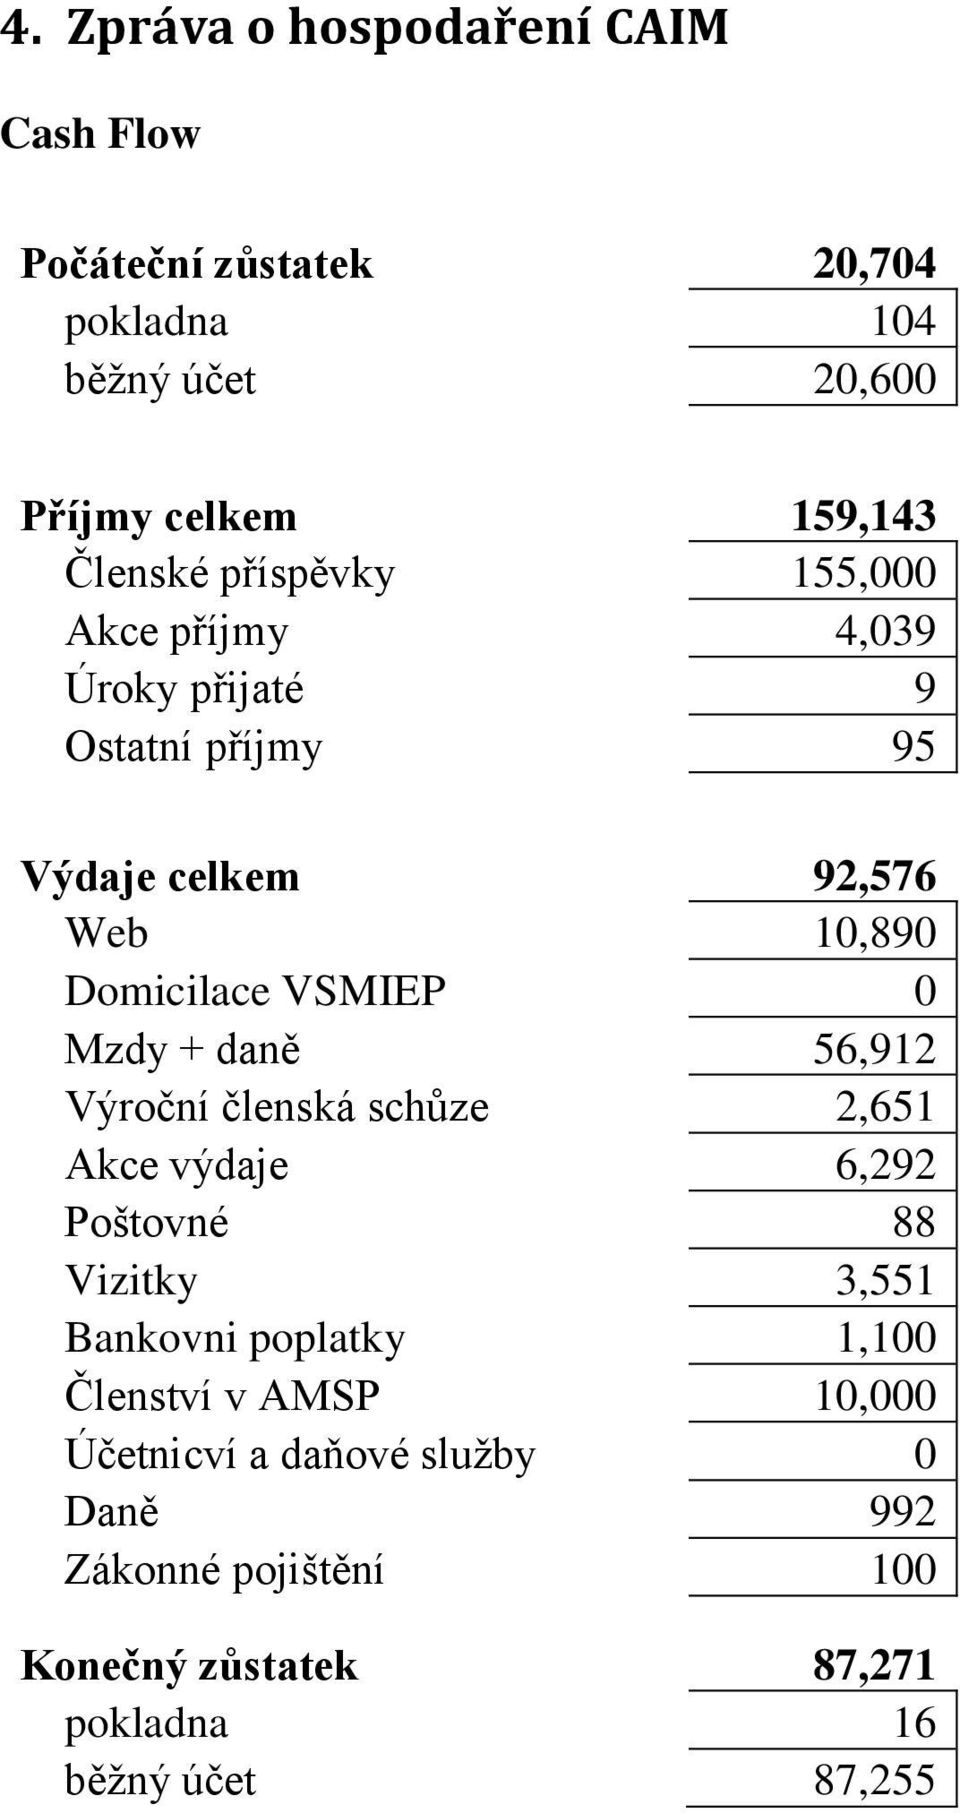 VSMIEP 0 Mzdy + daně 56,912 Výroční členská schůze 2,651 Akce výdaje 6,292 Poštovné 88 Vizitky 3,551 Bankovni poplatky 1,100